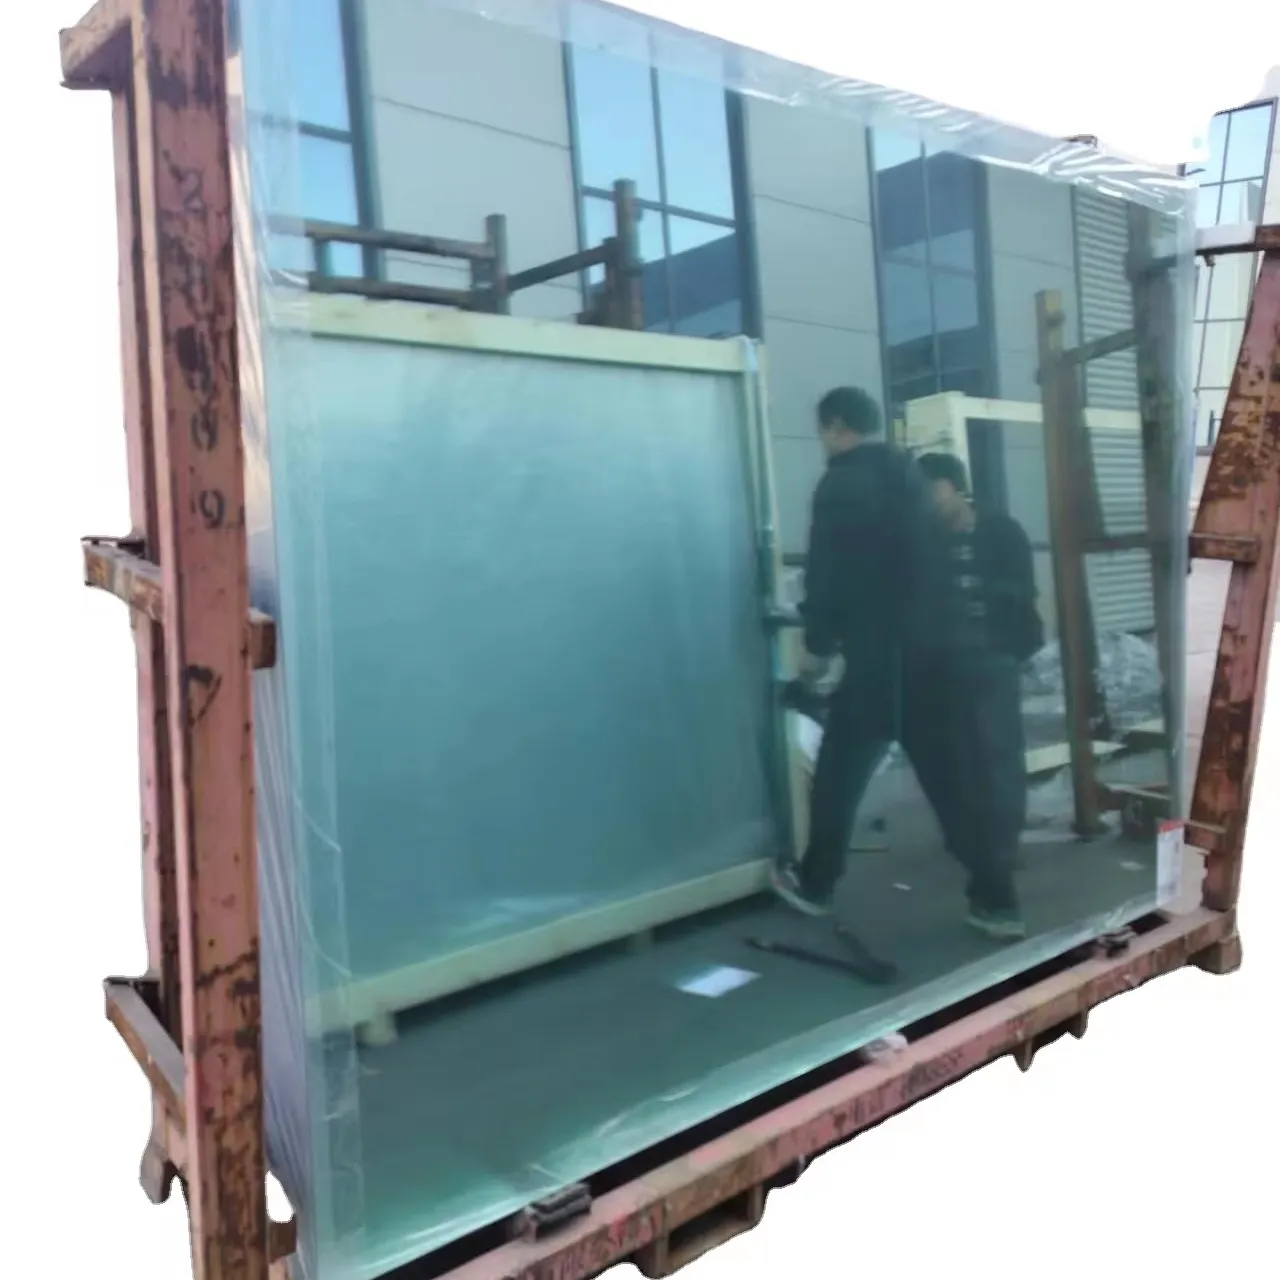 Vidrio flotado transparente de alta calidad 3-12mm suministro directo de fábrica china